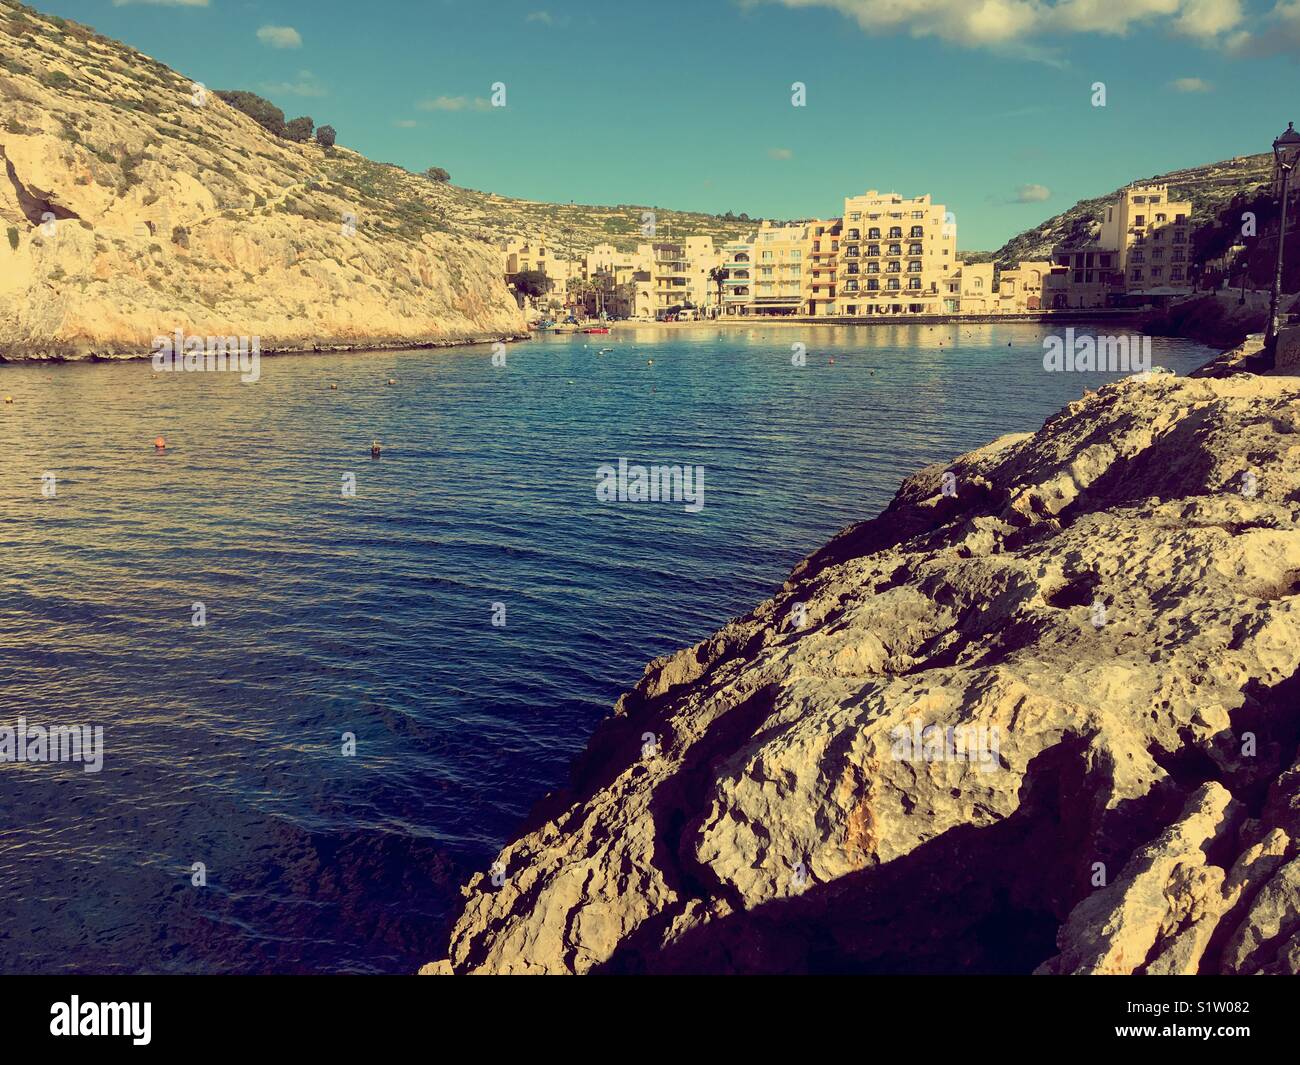 Village de Xlendi, Gozo, Malte de bay leadin à mer ouverte Banque D'Images